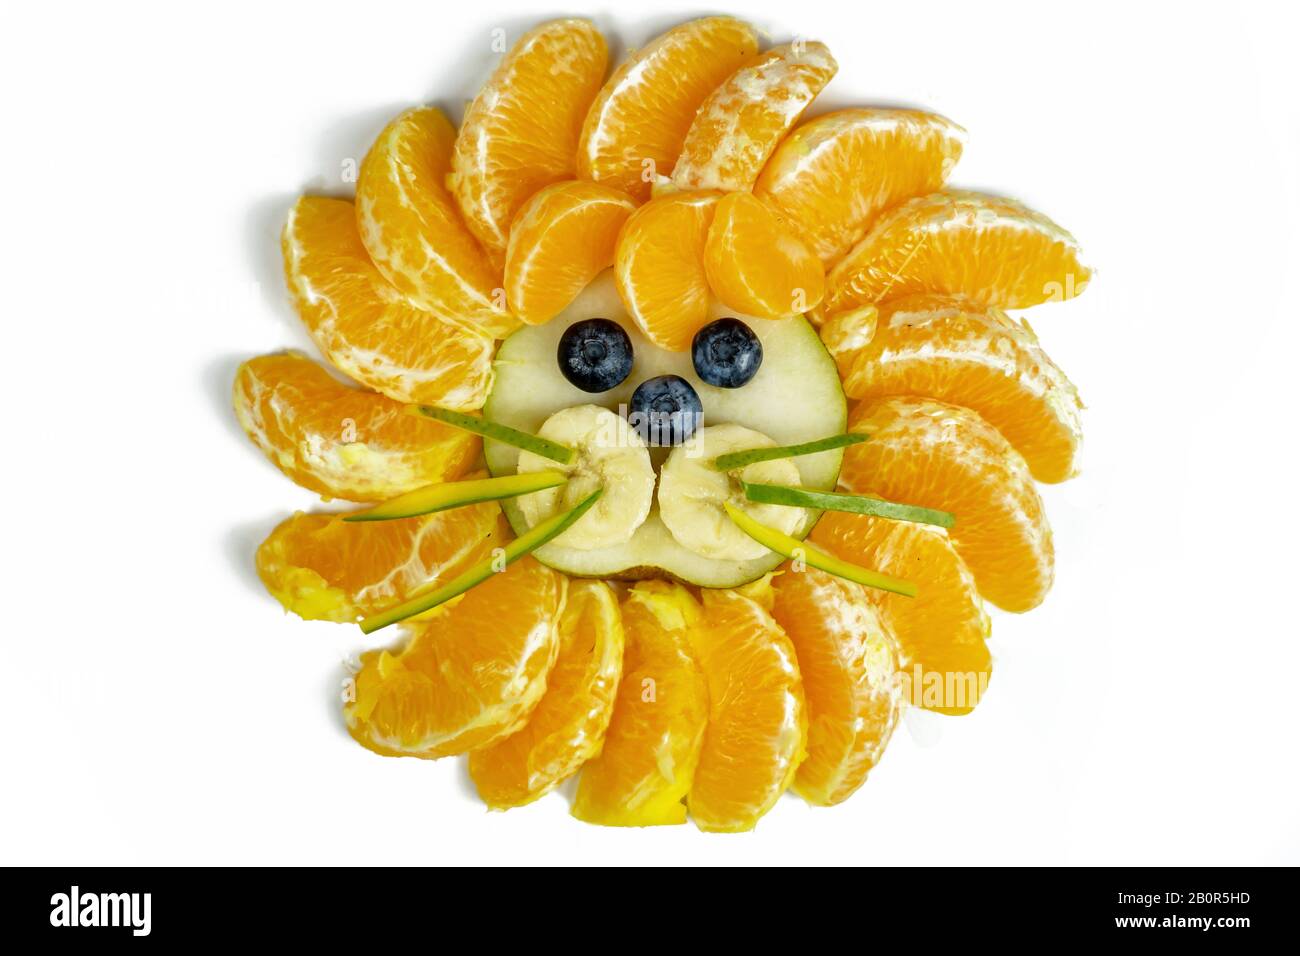 composition du visage de lion isolé avec des fruits comme le bleuet d'orange Banque D'Images